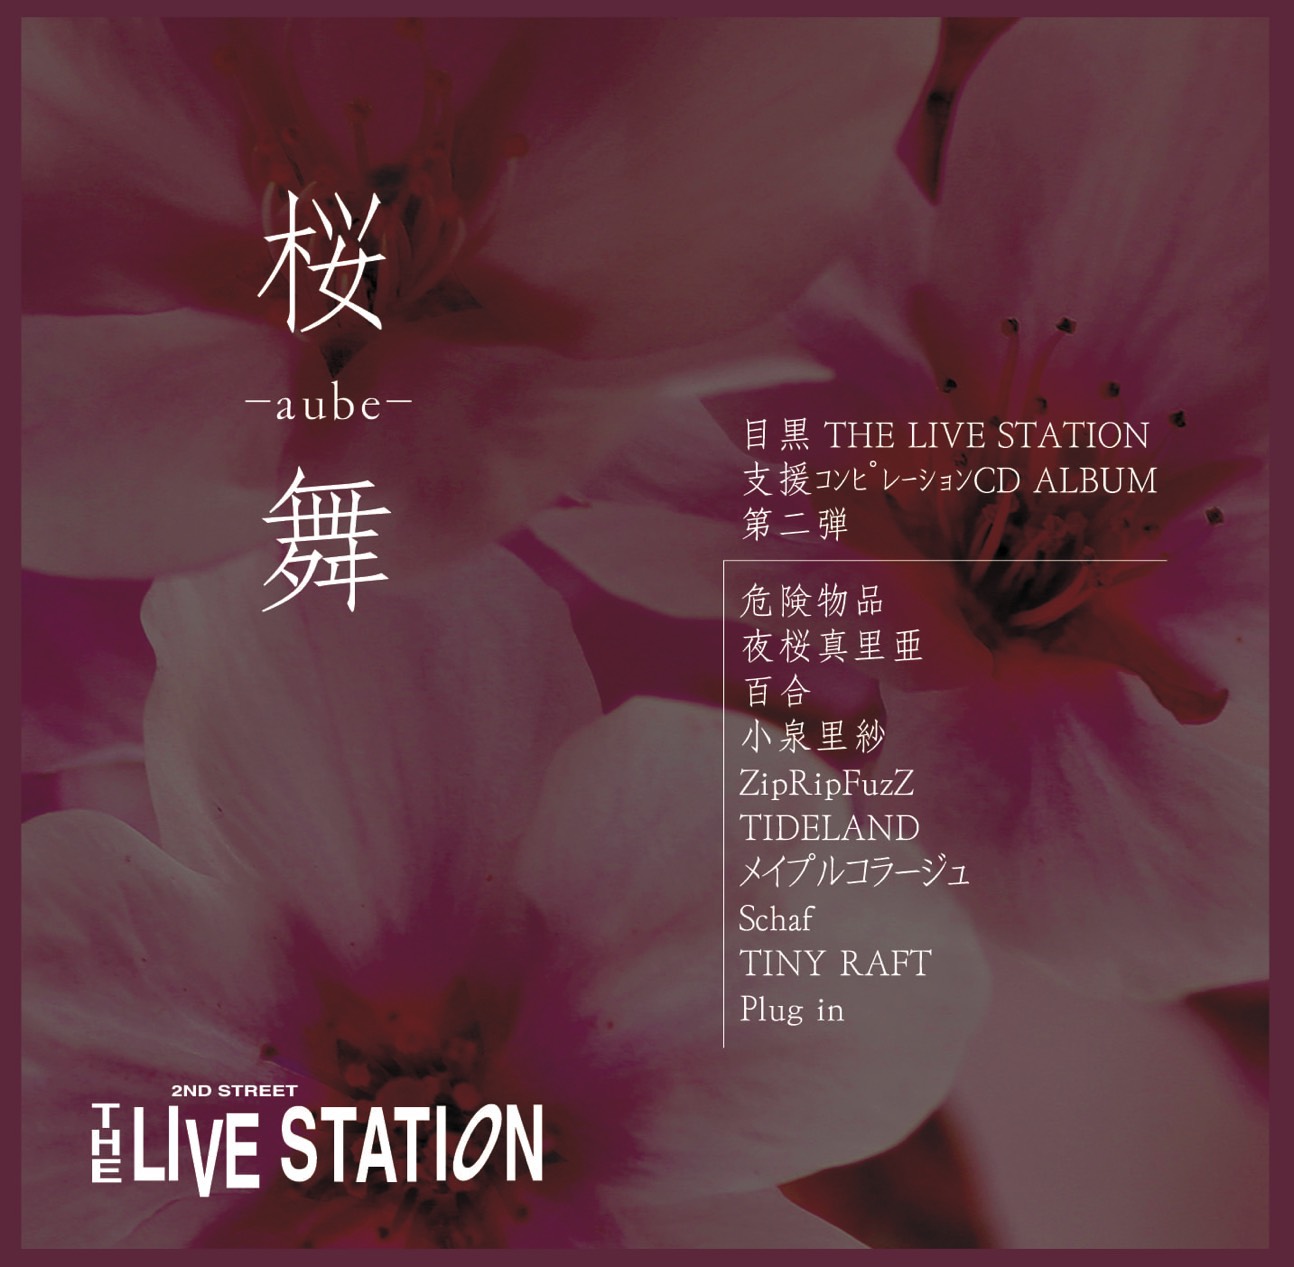 目黒ライブステーション支援コンピレーションアルバム第二弾「桜舞-aube-」